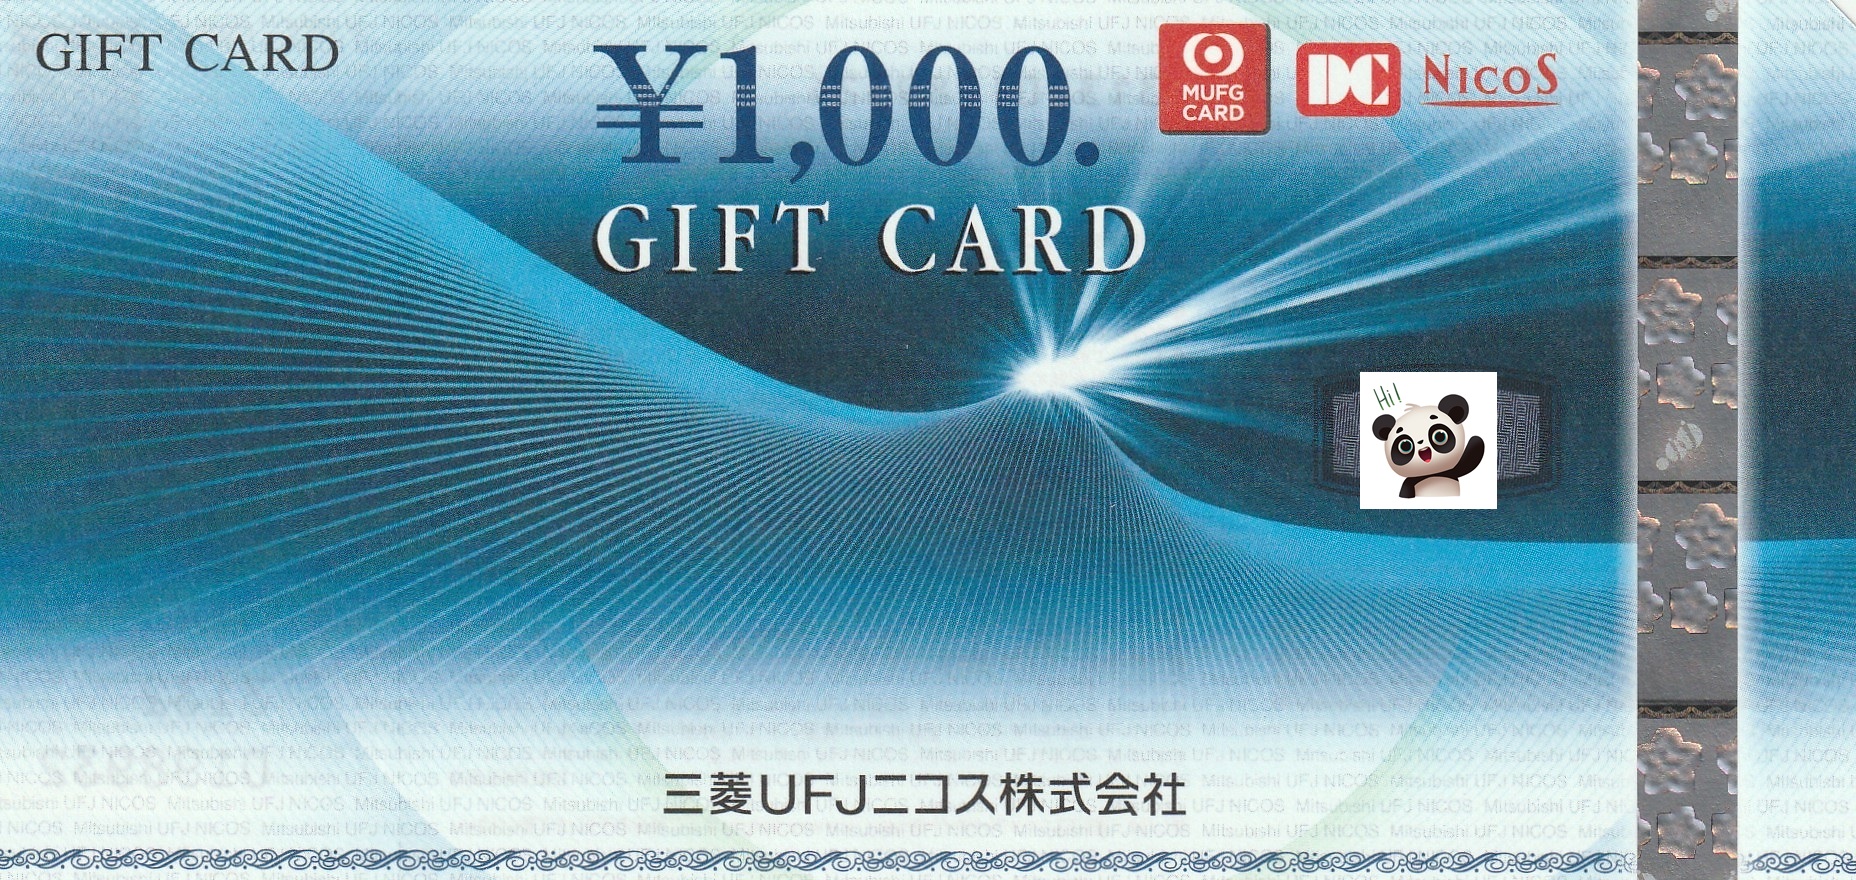 【9月優待】株式会社アサンテから三菱UFJニコスギフトカードが届きました